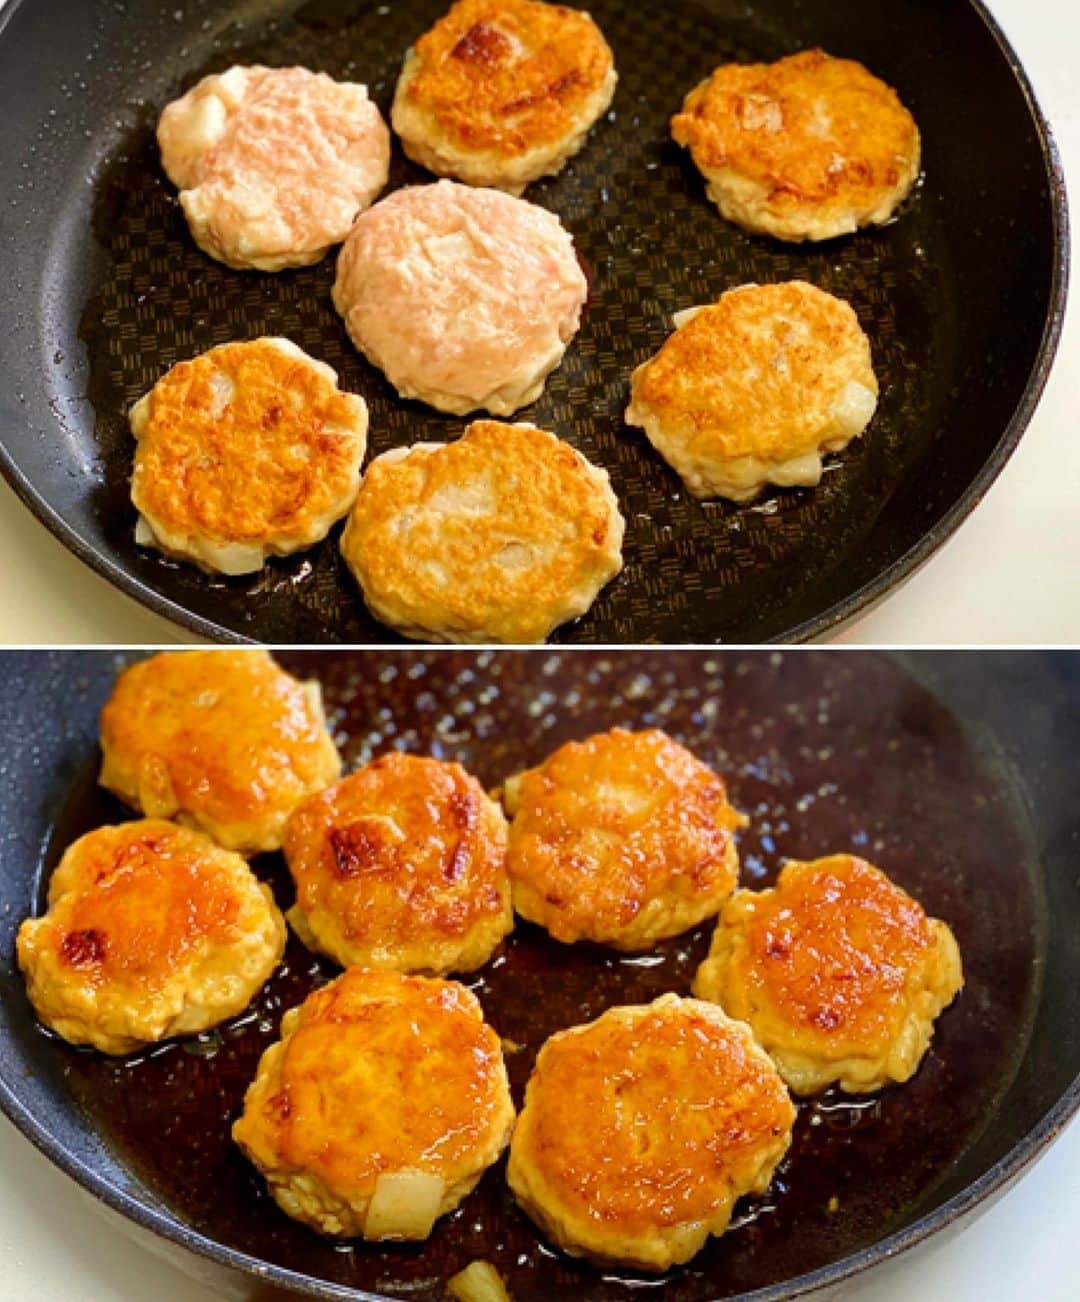 Mizuki【料理ブロガー・簡単レシピ】さんのインスタグラム写真 - (Mizuki【料理ブロガー・簡単レシピ】Instagram)「・﻿ 【レシピ】ーーーーーーーーーーーー﻿ ♡ふわシャキ♡長芋入り鶏つくね♡﻿ ーーーーーーーーーーーーーーーーー﻿ ﻿ ﻿ ﻿ おはようございます(*^^*)﻿ ﻿ 今日ご紹介させていただくのは﻿ ゴロっと長芋入り鶏つくね♡﻿ 角切りにした長芋は食感がよく﻿ ヘルシーにかさ増しもできて﻿ いいこと尽くめ(*´艸`)﻿ 小さめサイズでお子さんも食べやすく﻿ お弁当にもぴったりですよ〜♩﻿ ﻿ とっても簡単にできるので﻿ よかったらお試し下さいね(*^^*)﻿ (6個作ったつもりが﻿ 写真見たら7個でした😂笑)﻿ ﻿ ﻿ ﻿ ーーーーーーーーーーーーーーーーーーーー﻿ 【2人分】﻿ 長芋...100g﻿ 鶏ひき肉...200g﻿ ●片栗粉・マヨネーズ...各大1﻿ ●塩こしょう...少々﻿ ☆醤油・酒...各大2﻿ ☆砂糖・みりん...各大1﻿ サラダ油...大1/2﻿ ﻿ 1.長芋は8mm角に切る。ボウルにひき肉、長芋、●を入れてよく混ぜ、6〜7等分に分ける。☆は合わせておく。﻿ 2.フライパンにサラダ油を中火で熱し、1のタネを(水で濡らした手で)形を整えながら入れて焼く。焼き色が付いたら裏返し、フタをして弱めの中火で3分蒸し焼きにする。﻿ 3.☆を加えて煮からめる。﻿ ーーーーーーーーーーーーーーーーーーーー﻿ ﻿ ﻿ ﻿ 《ポイント》﻿ ♦︎たねは柔らかいので、成形する時は手を水で濡らしておくと◎又、形は変わりますが、スプーンで落として焼いてもOKです♩﻿ ♦︎冷蔵庫で3日くらい保存できます♩﻿ ﻿ ﻿ ﻿ ﻿ ﻿ ﻿ ﻿ 【🎥YouTube更新しました🎥】﻿ (＊ハイライトから飛べます♩)﻿ ↓﻿ 🧁ホケミで！クッキー&クリームマフィン﻿ 🍳揉んで焼くだけ！やみつきチキン﻿ 🌭材料4つ！アメリカンドッグ﻿ ﻿ ﻿ ﻿ ﻿ ﻿ 5刷重版しました🔻﻿ 本当にありがとうございます🙇‍♀️﻿ ＿＿＿＿＿＿＿＿＿＿＿＿＿＿＿＿＿＿＿﻿ 📕\ \ 新刊発売中 / /📕﻿ 簡単・時短！ 毎日のごはんがラクになる﻿ ✨🦋 【 #Mizukiの今どき和食 】🦋✨﻿ ＿＿＿＿＿＿＿＿＿＿＿＿＿＿＿＿＿＿＿﻿ なるべく少ない材料で﻿ 手間も時間も省きながら﻿ 簡単にできるおいしい和食レシピ♩﻿ 簡単に失敗なくマスターできる一冊で﻿ もっと気軽に、カジュアルに﻿ 和食を楽しんで下さいね(*^^*)﻿ ＿＿＿＿＿＿＿＿＿＿＿＿＿＿＿＿＿＿＿﻿ ﻿ ﻿ ﻿ ＿＿＿＿＿＿＿＿＿＿＿＿＿＿＿＿＿﻿ 🎀5刷重版しました🎀﻿ 混ぜて焼くだけ。はじめてでも失敗しない！﻿ 【#ホットケーキミックスのお菓子 】﻿ ﻿ 一冊まるっとホケミスイーツ♩﻿ 普段のおやつから﻿ 特別な日にも使えるレシピを﻿ この一冊に詰め込みました(*^^*)﻿ ホットケーキミックスを使えば﻿ 簡単に本格的なお菓子が作れますよ♡﻿ ＿＿＿＿＿＿＿＿＿＿＿＿＿＿＿＿＿﻿ ﻿ ⭐️ストーリー、ハイライト、プロフ画面に﻿ 本のURLを貼らせていただいております♩﻿ →(@mizuki_31cafe )﻿ ﻿ ﻿ ﻿ ﻿ #長芋#つくね#鶏つくね#鶏ひき肉#ヘルシー#お弁当#うちで過ごそう#おうち時間#Mizuki#簡単レシピ#時短レシピ#節約レシピ#料理#レシピ#フーディーテーブル#マカロニメイト#おうちごはん#デリスタグラマー#料理好きな人と繋がりたい#おうちごはんlover#foodpic#follow#cooking#recipe#lin_stagrammer#stayhome#長芋入り鶏つくねm」6月24日 7時12分 - mizuki_31cafe